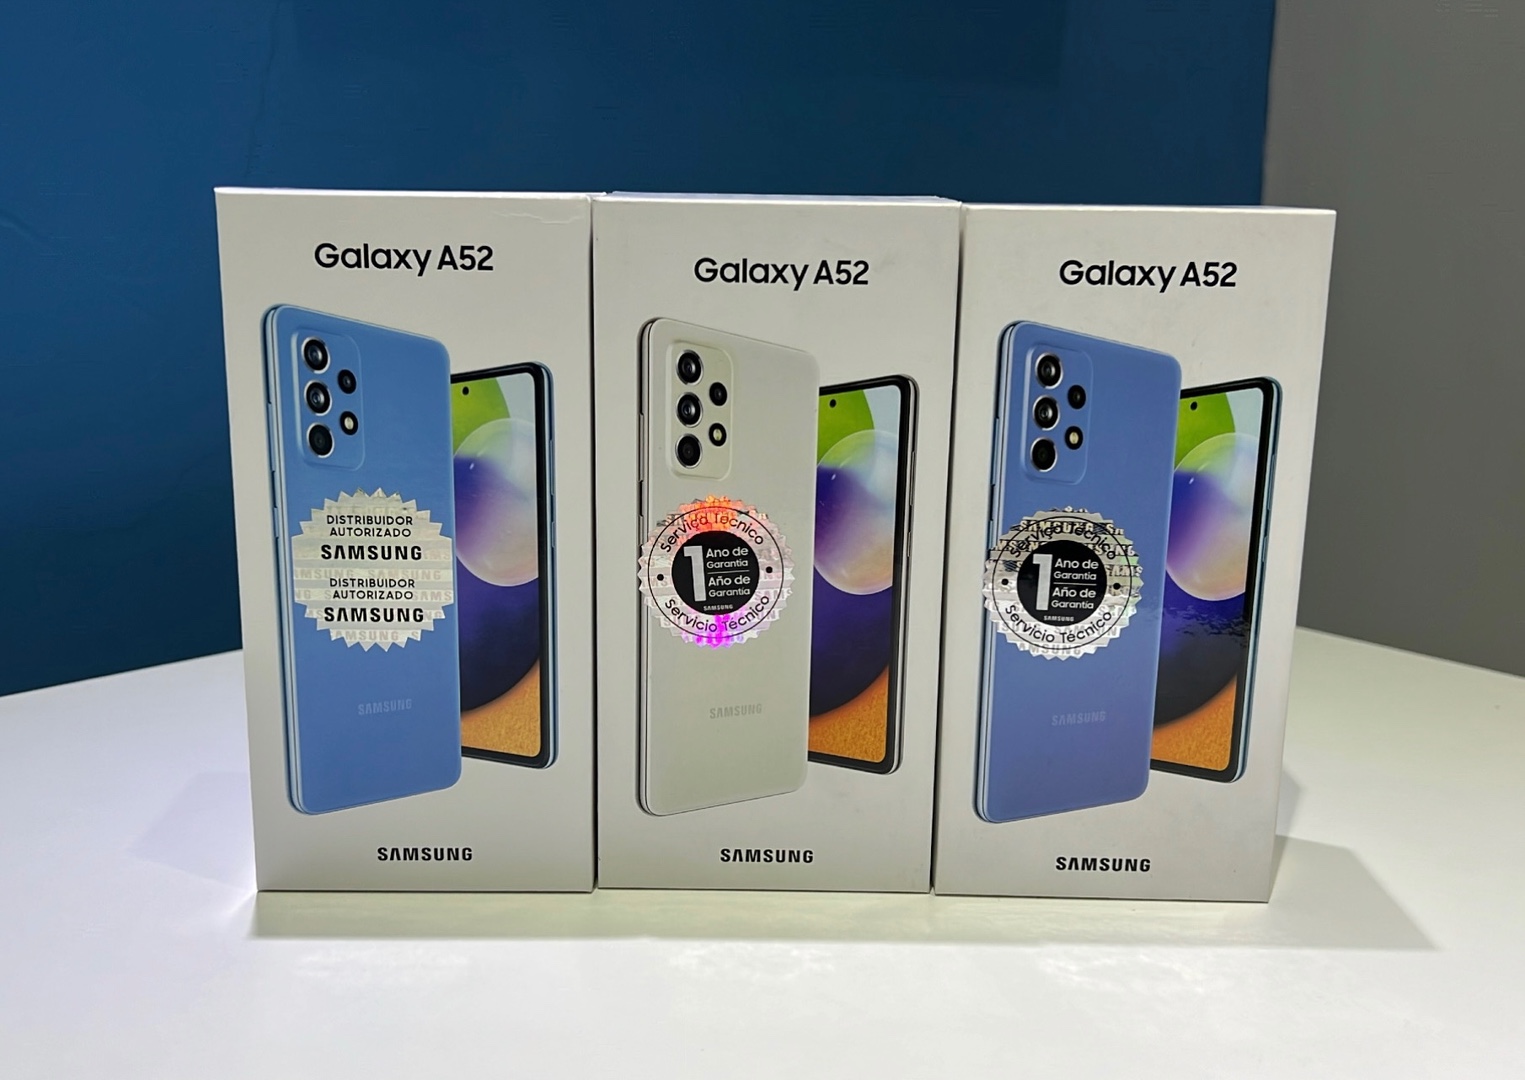 celulares y tabletas - Vendo Samsung Galaxy A52 128GB Nuevos Sellados Internacionales, $ 17,995 NEG